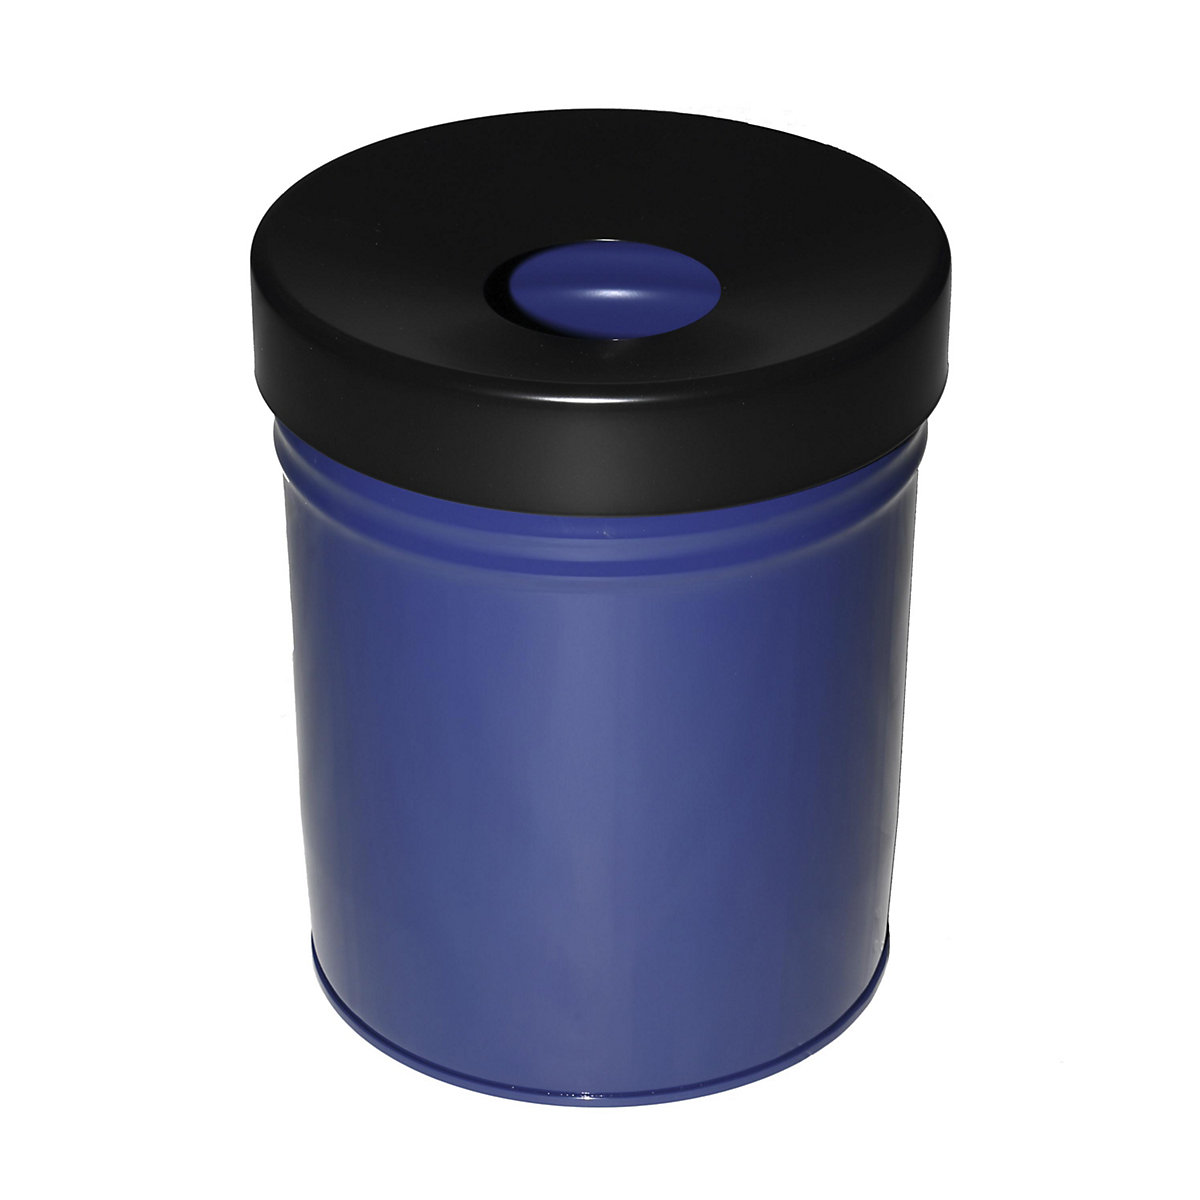 Nádoba na odpad, samozhášecí, objem 30 l, v x Ø 415 x 344 mm, modrá